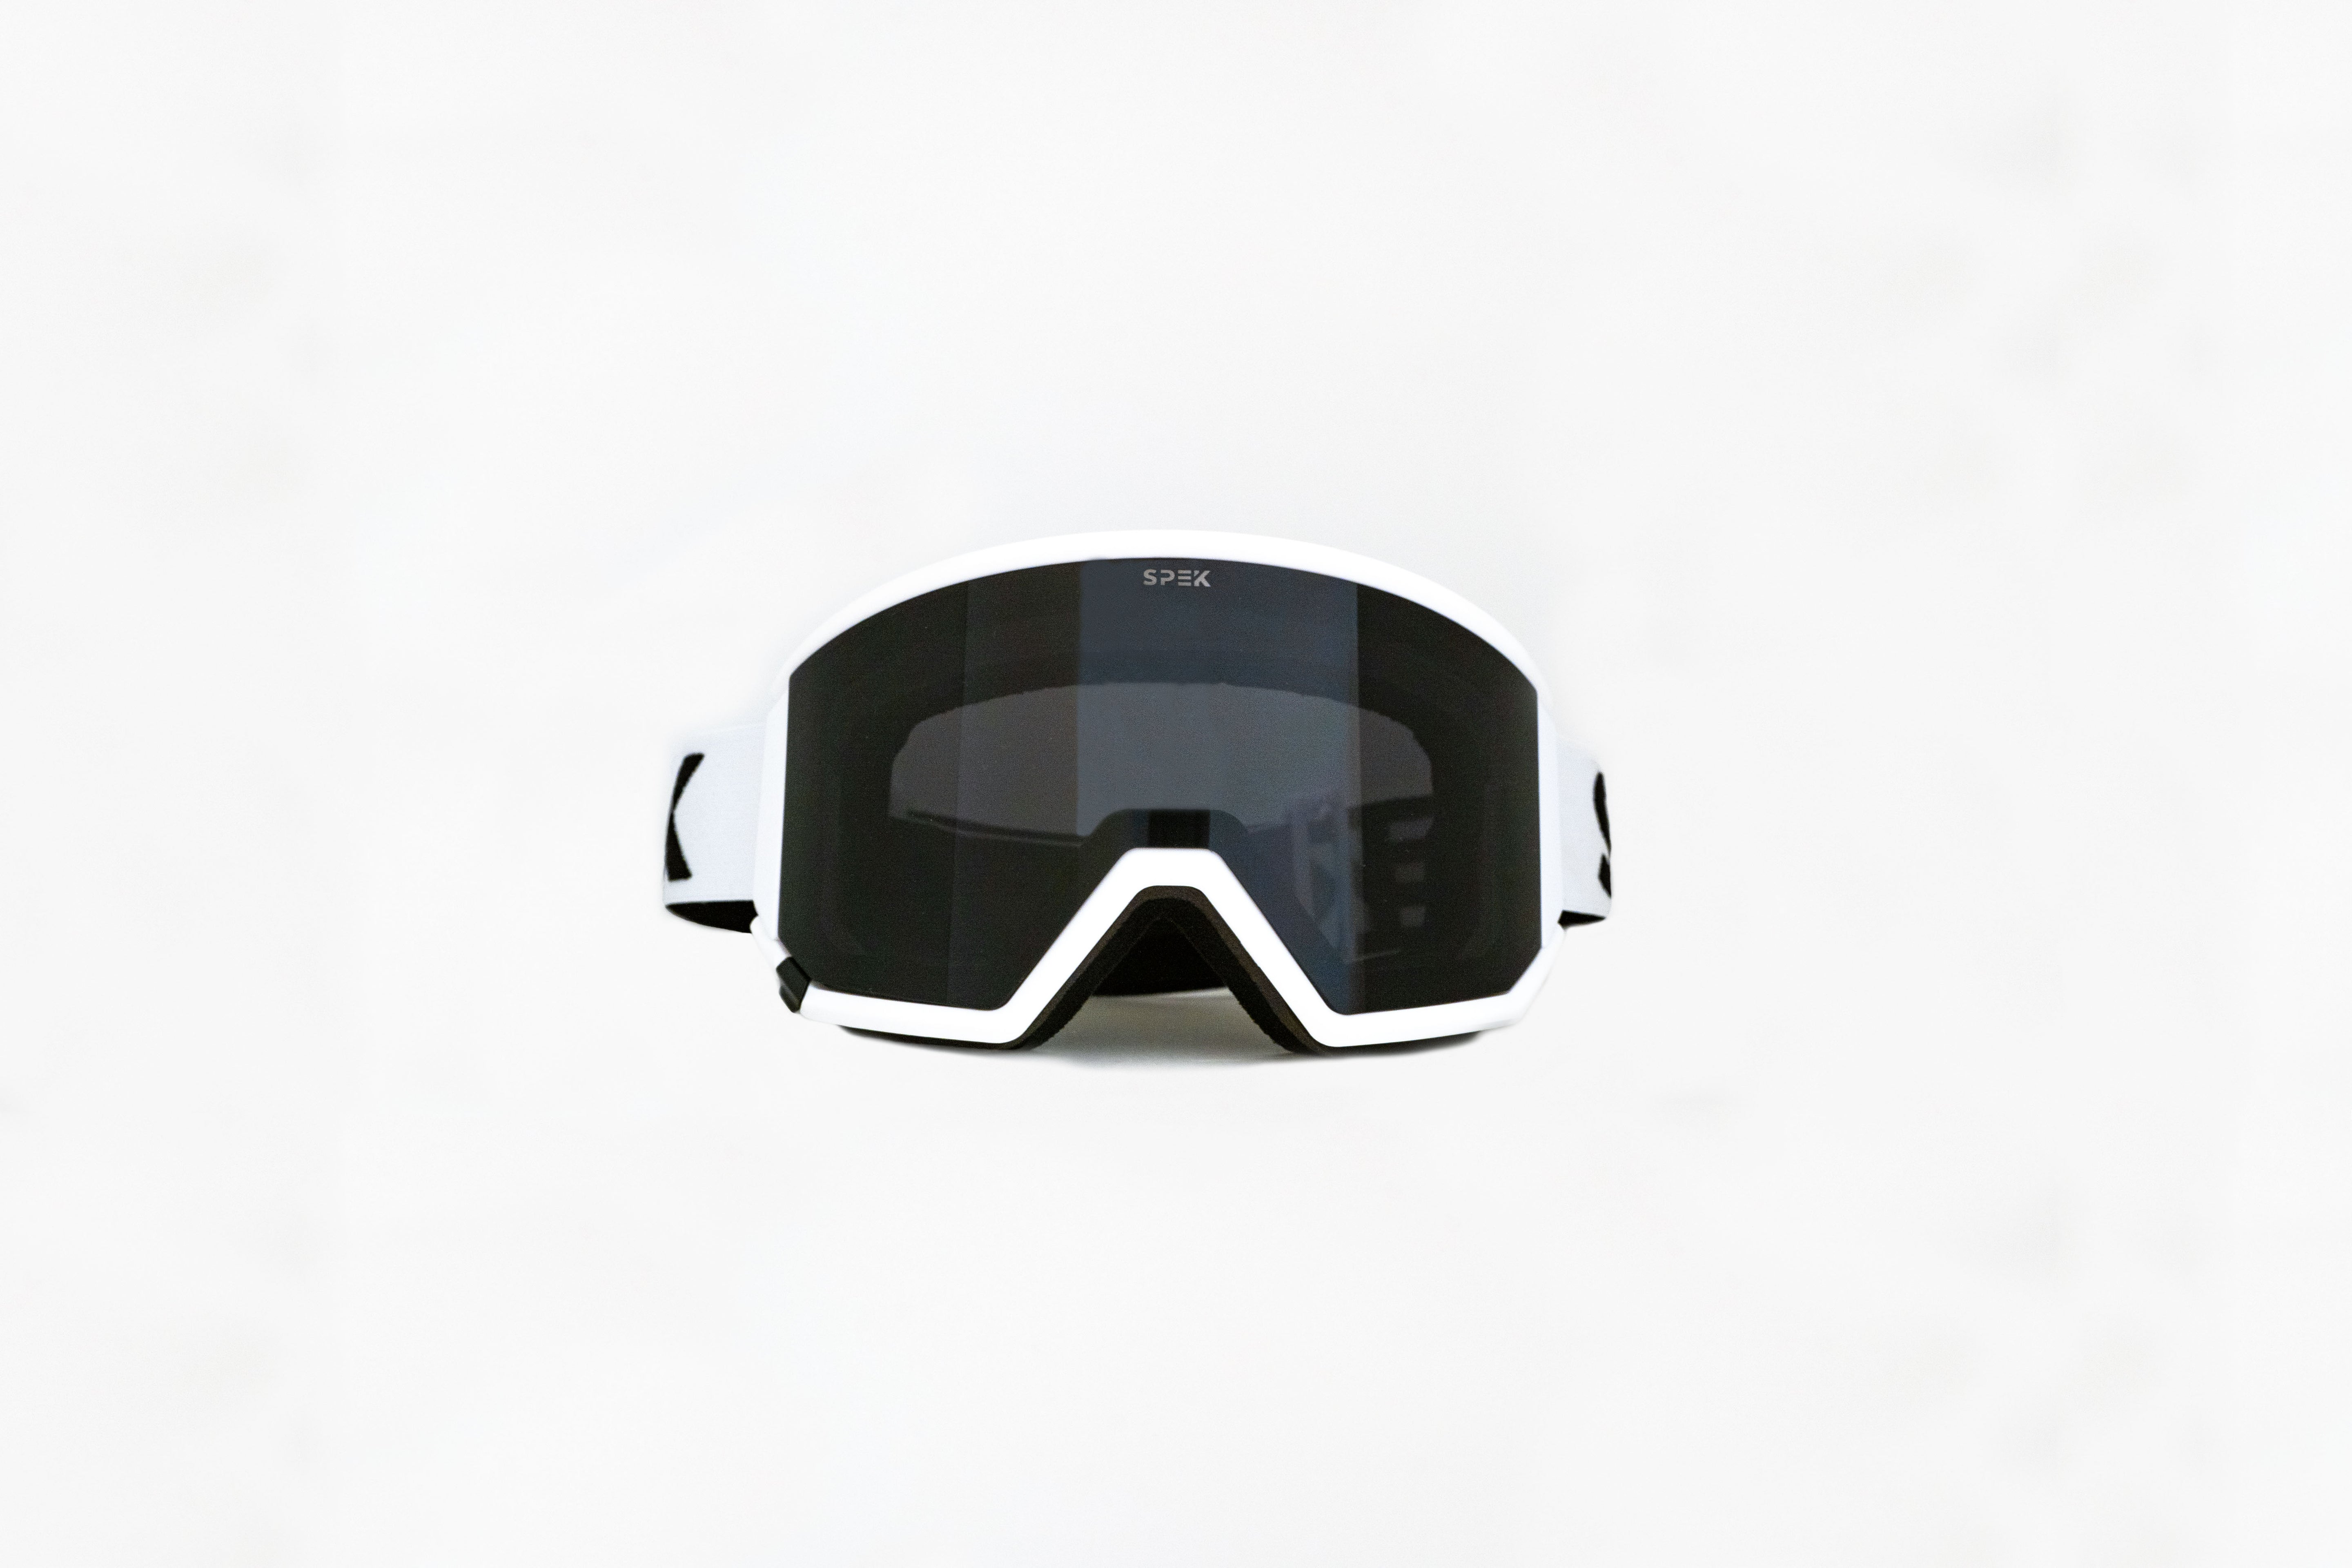 ARTIC ski goggles